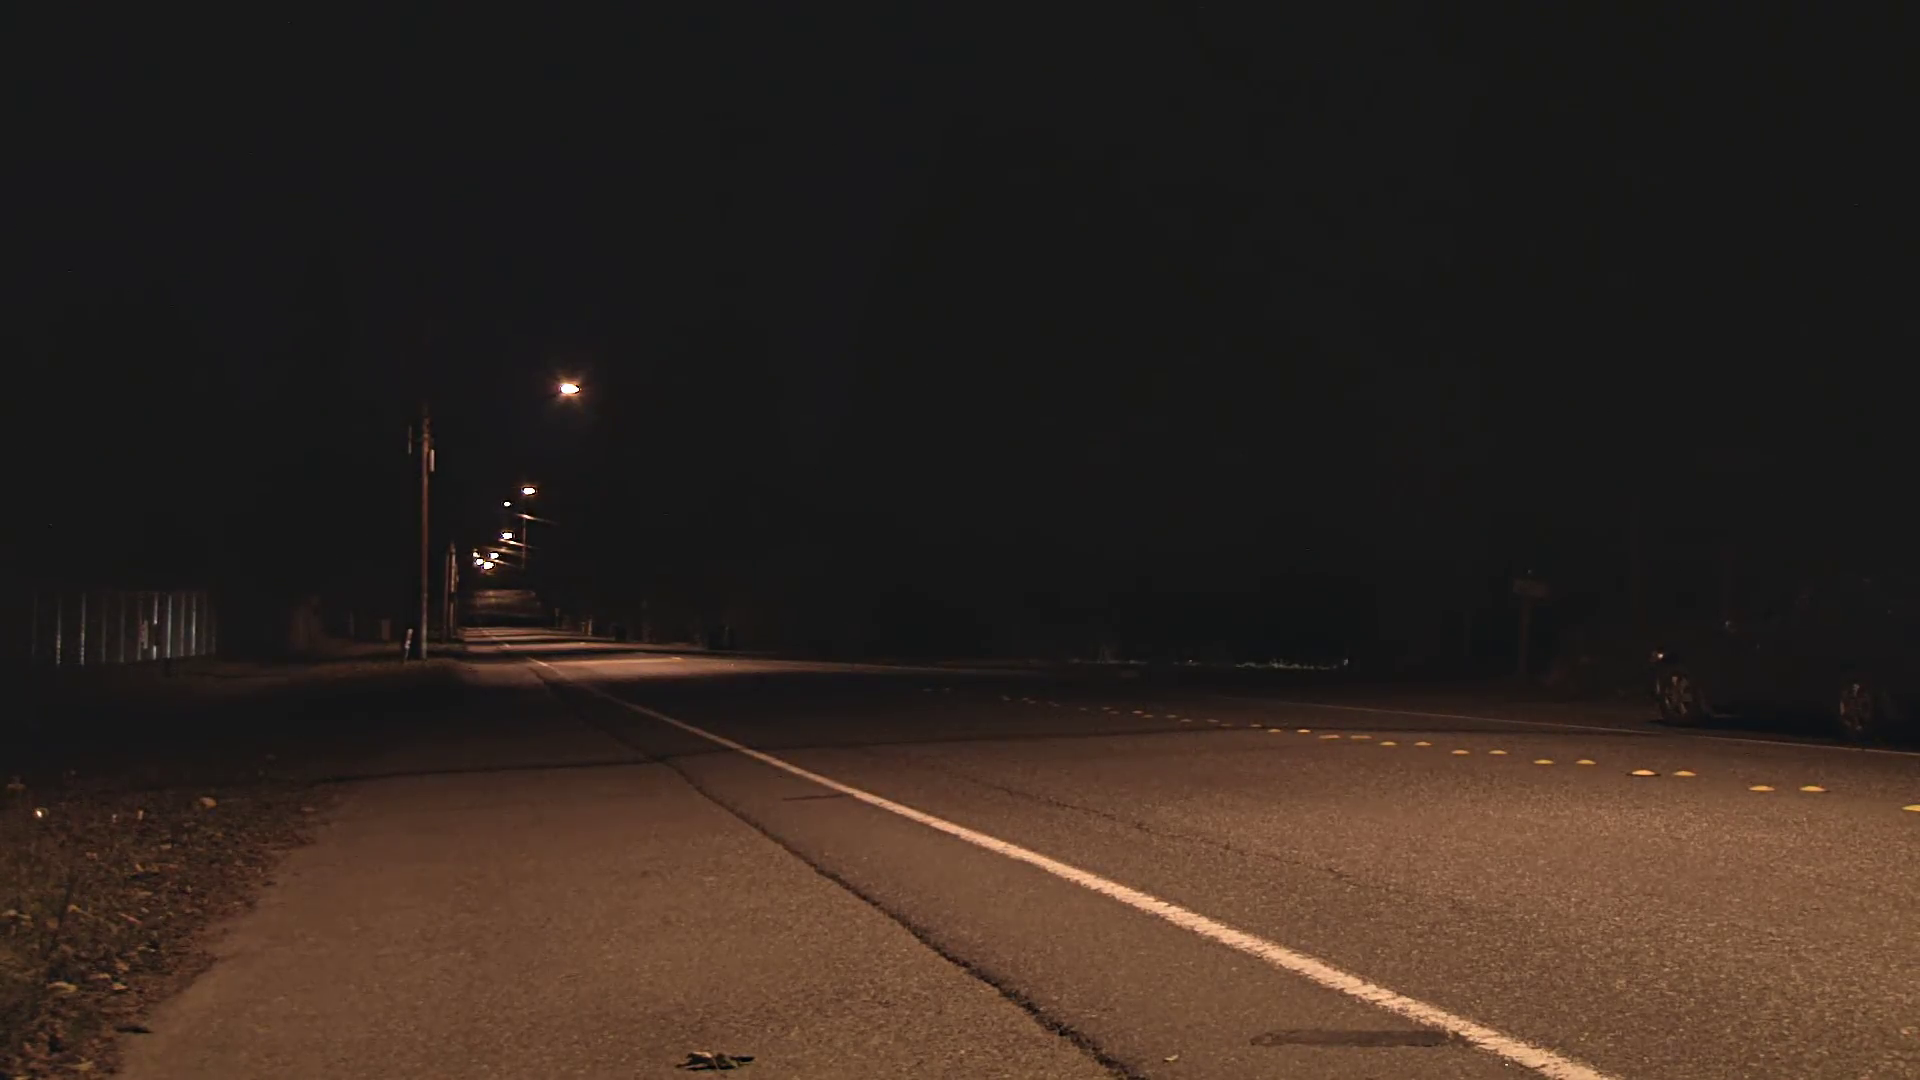 عکس خیابان تنهایی طولانی در شب برای پست اینستاگرام 